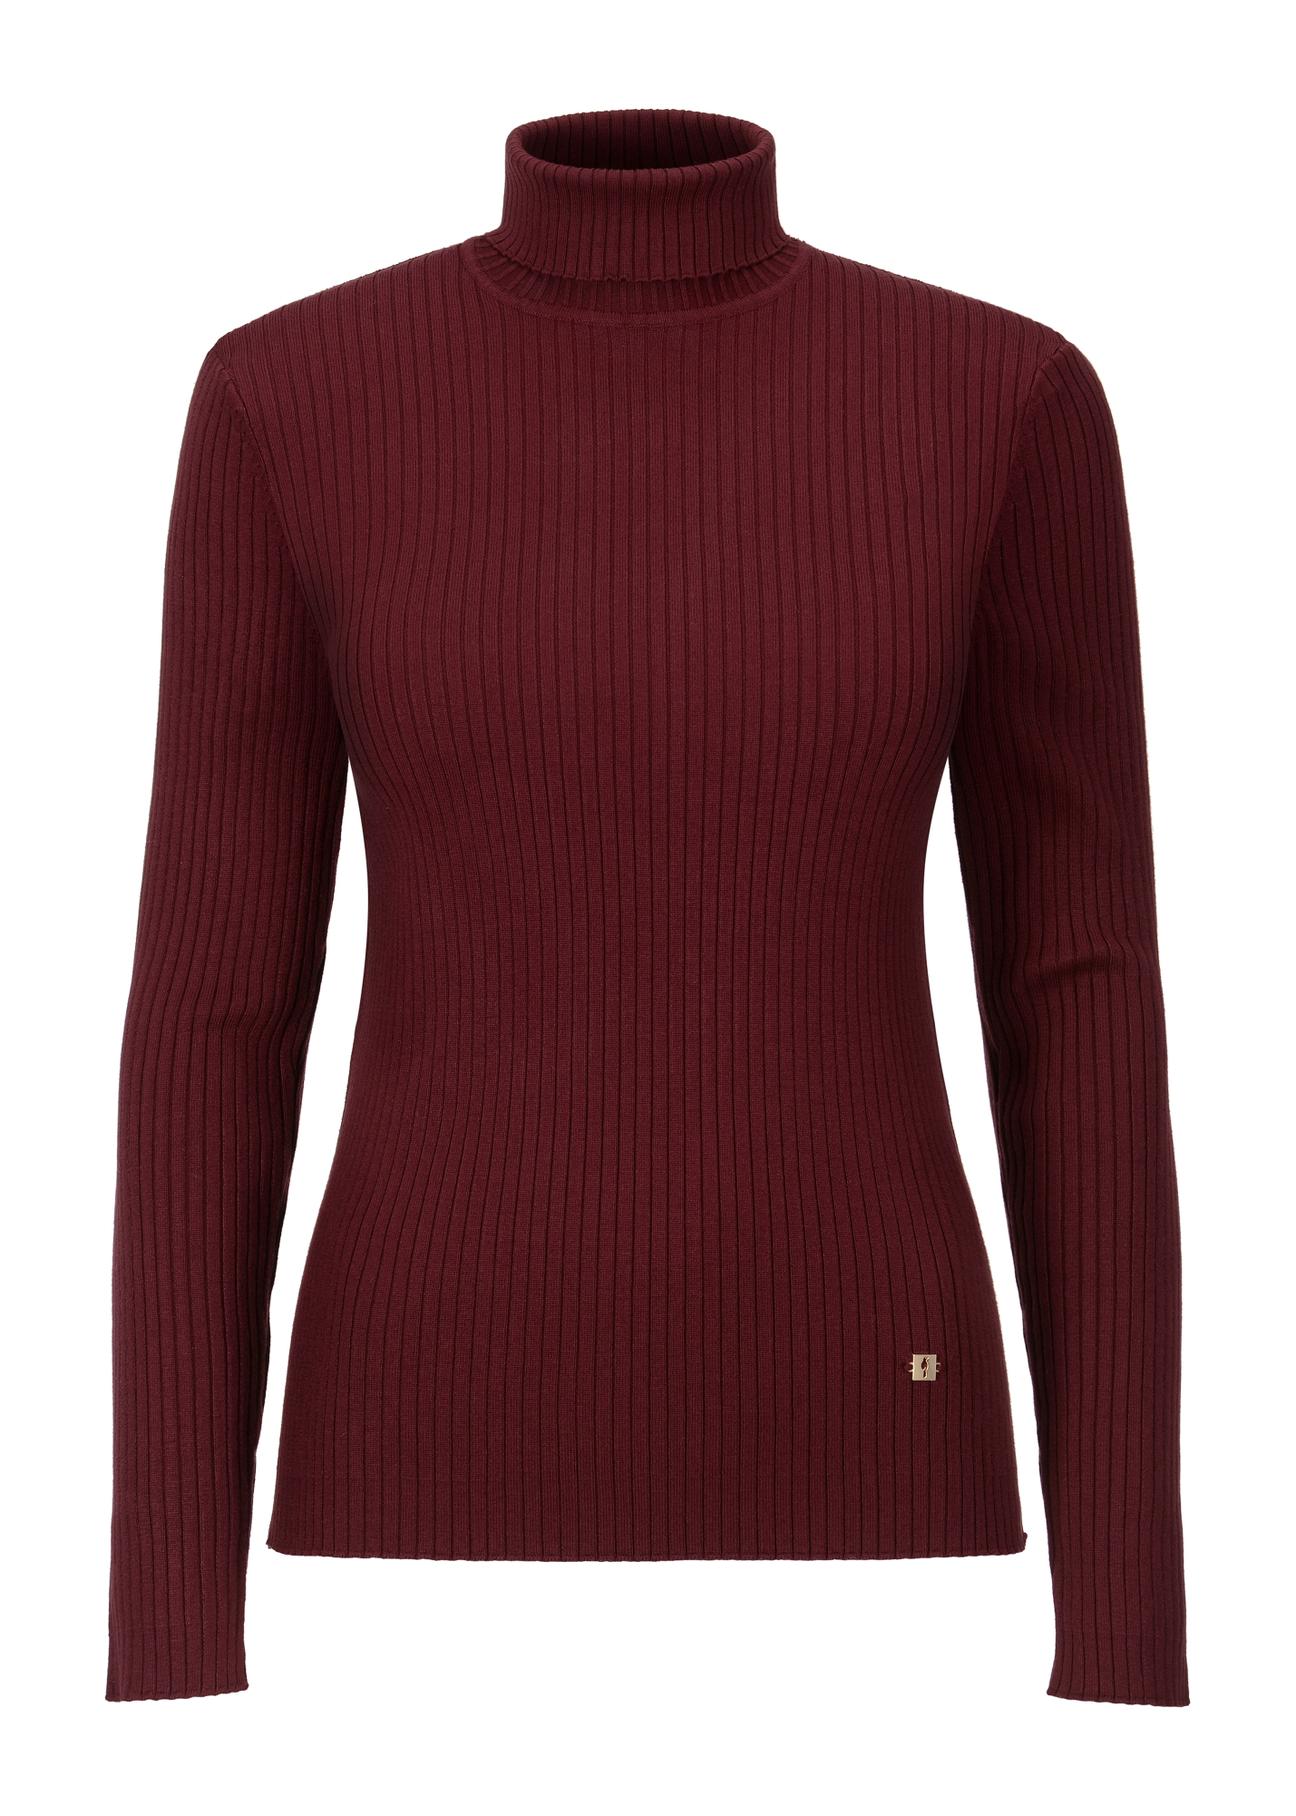 Bordowy sweter damski z golfem SWEDT-0184-49(Z23)